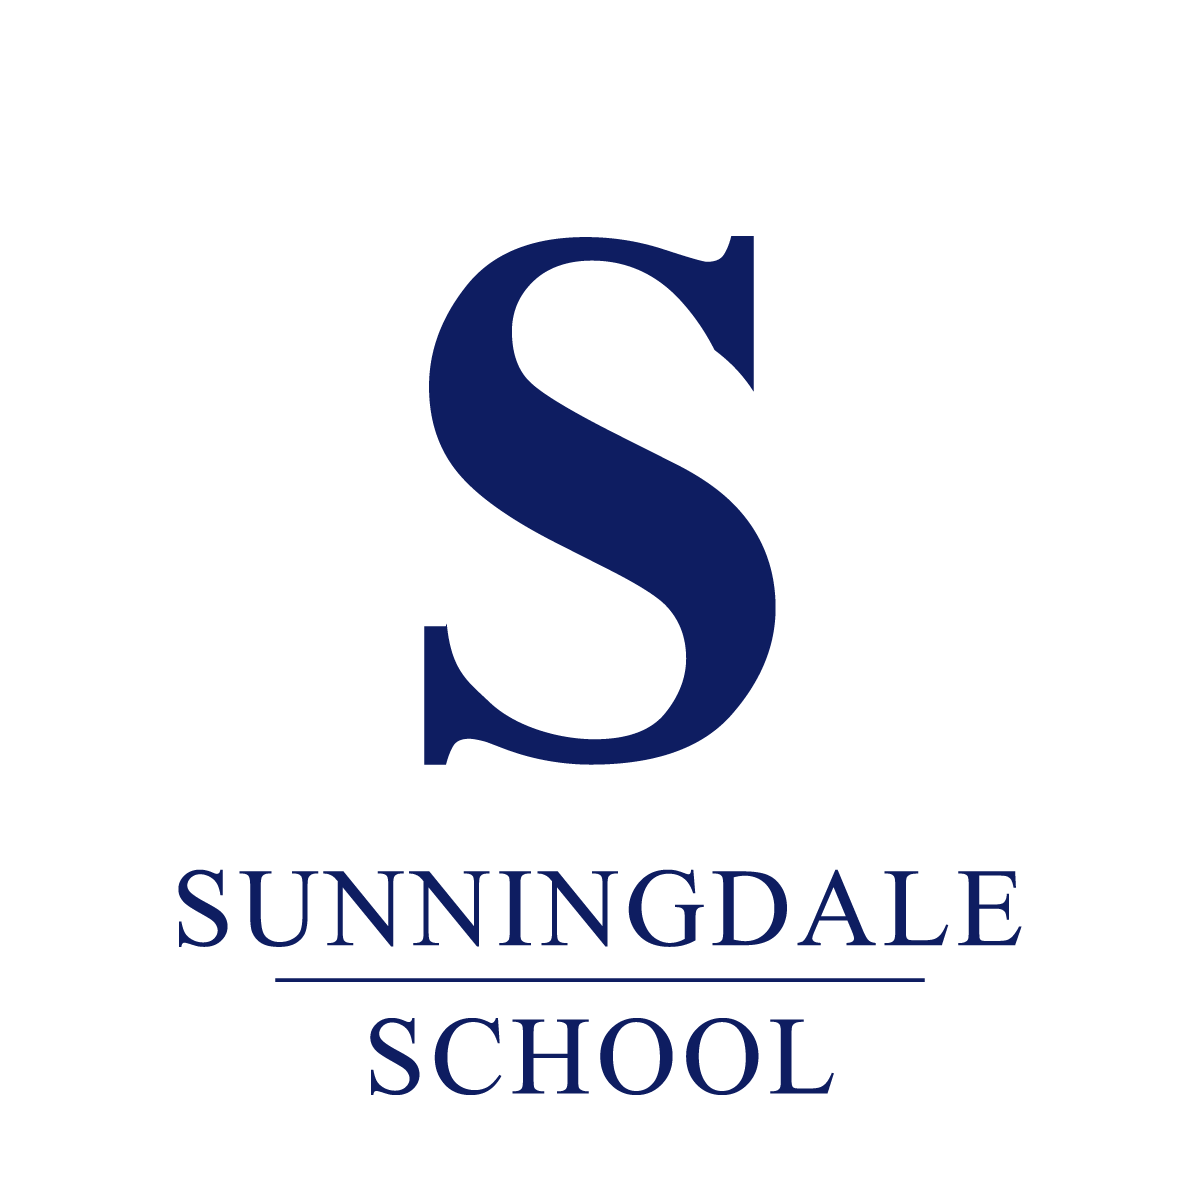 Sunningdale-School-On-Light-Blue.png